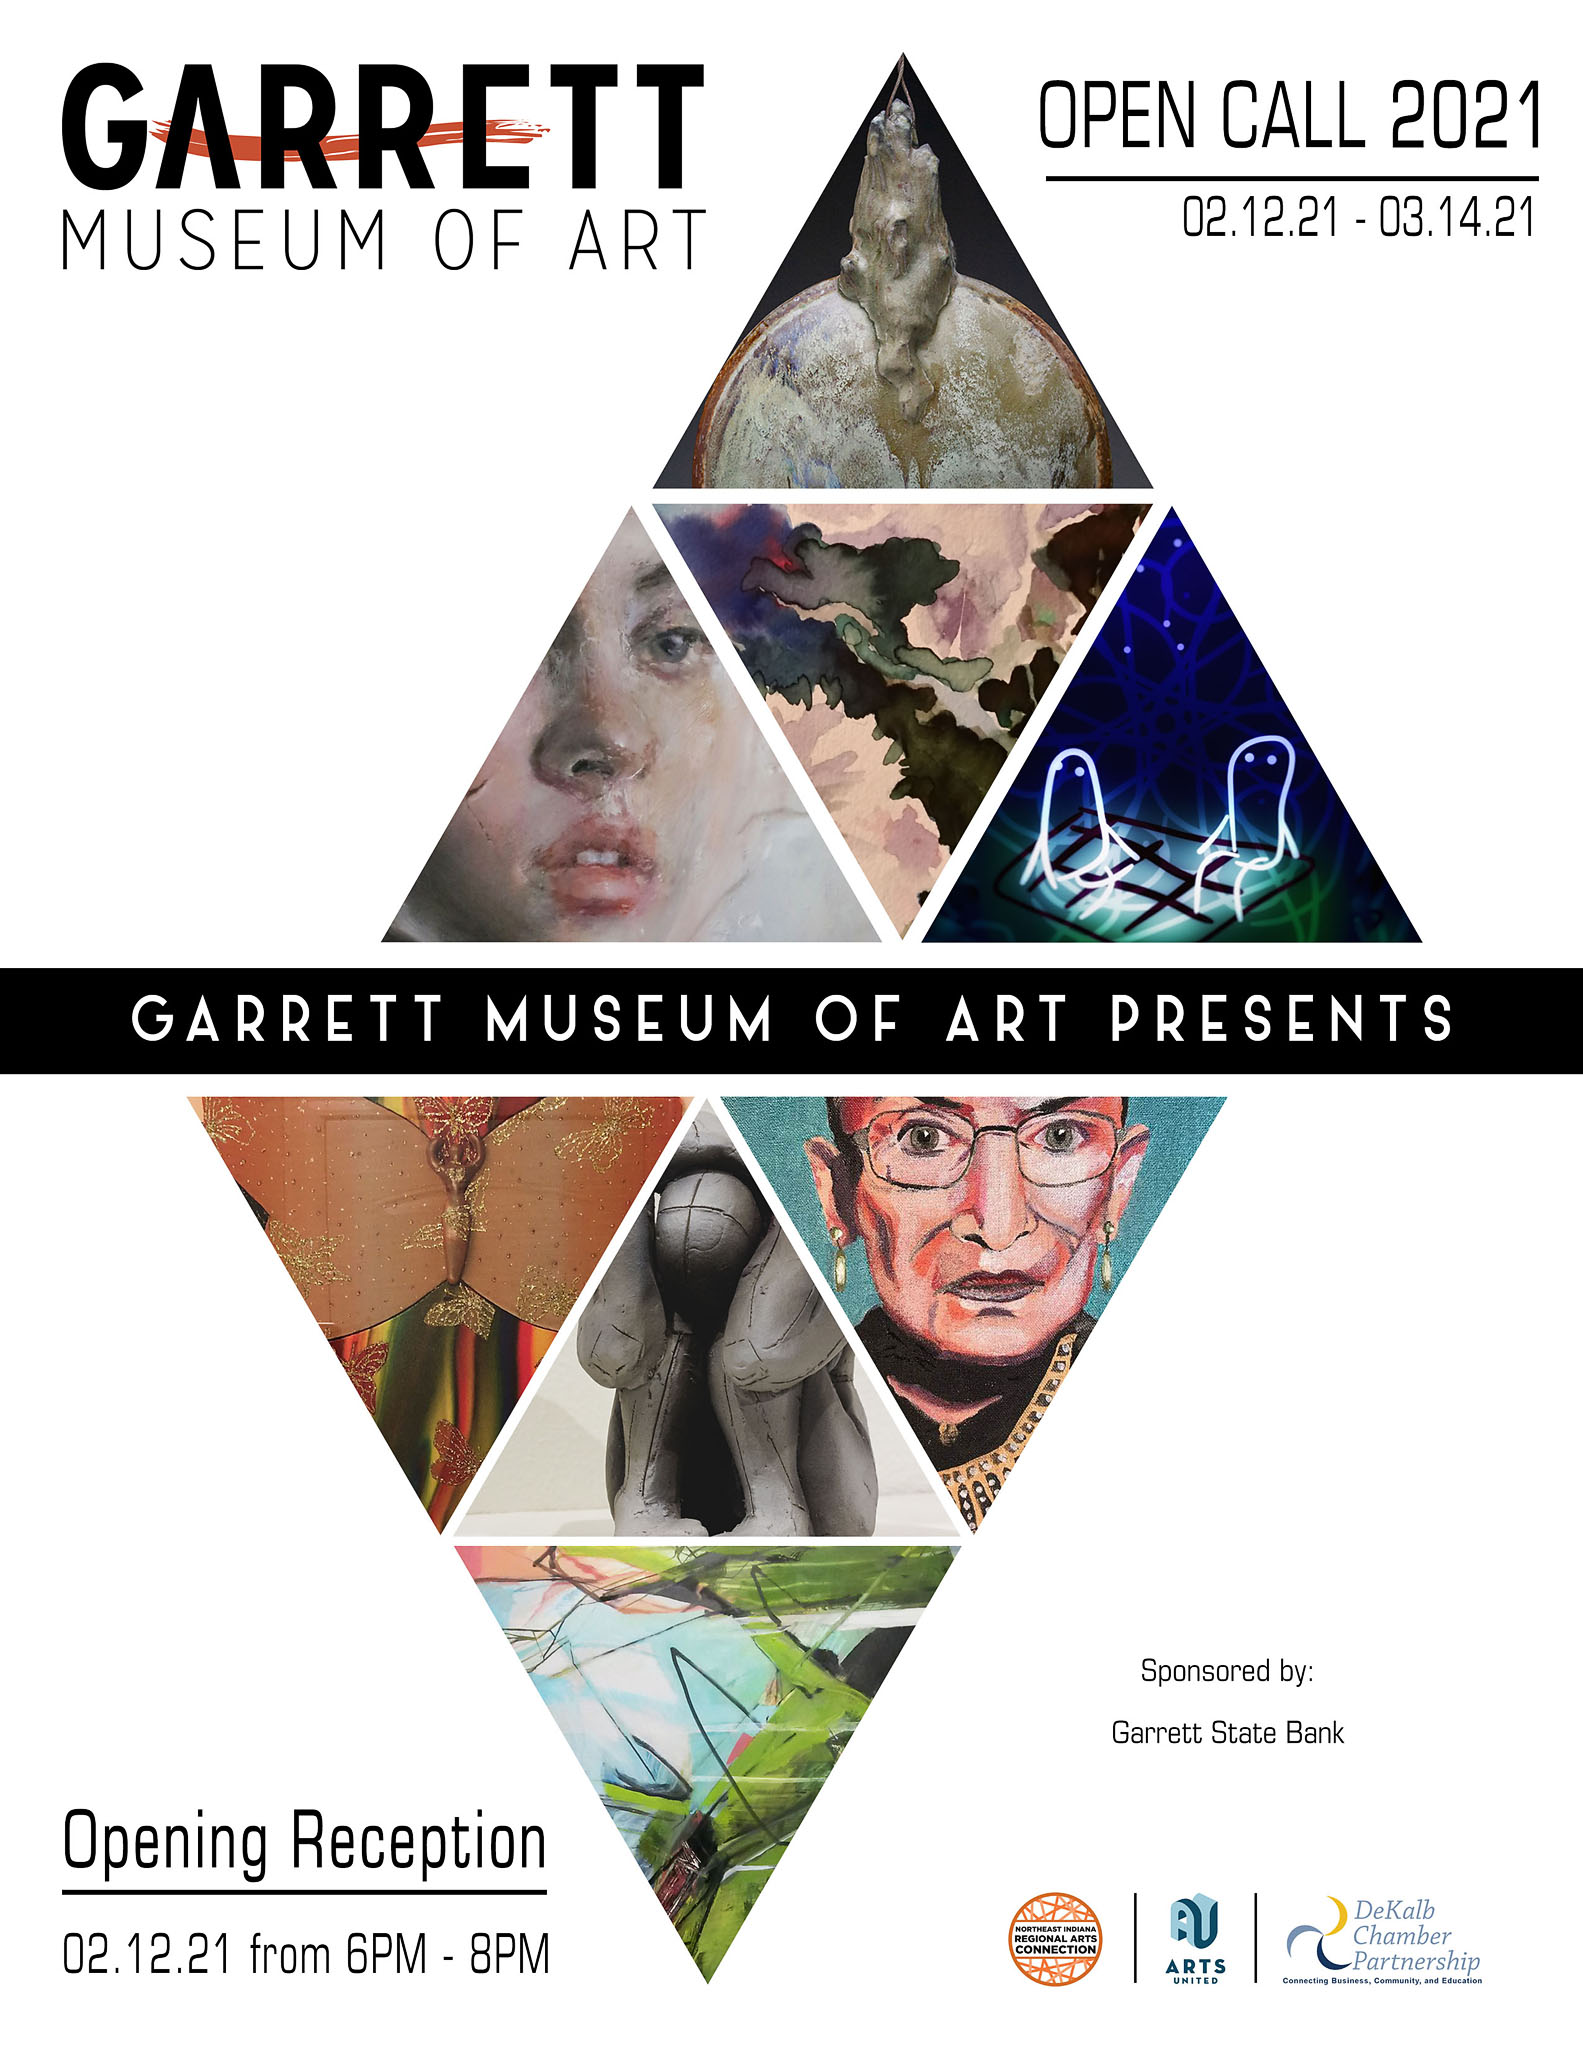 Open Call 2021 Garrett Museum of Art